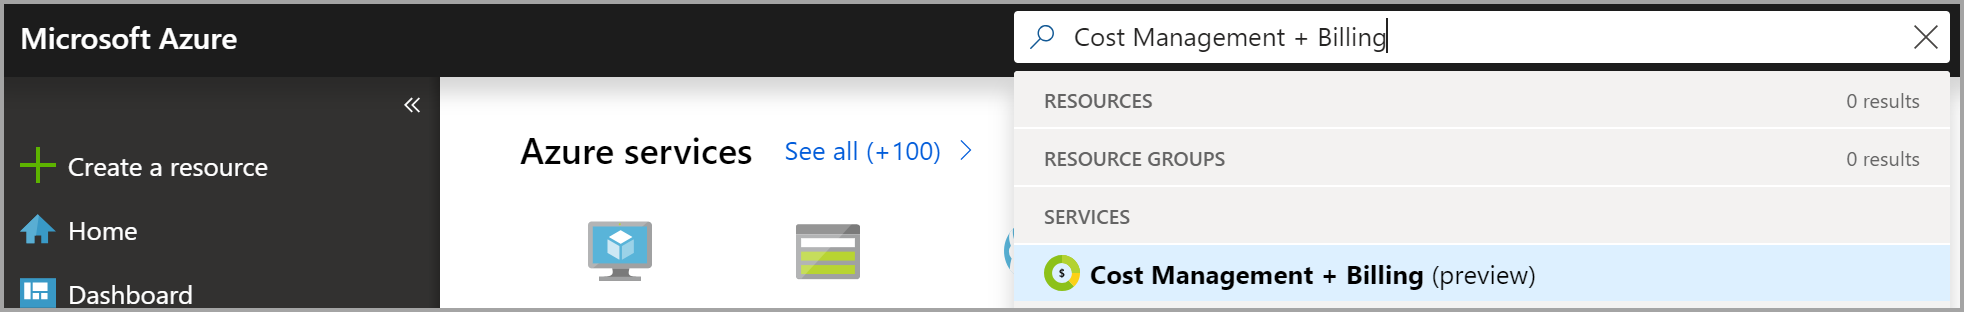 屏幕截图显示在 Azure 门户中搜索“成本管理 + 计费”。